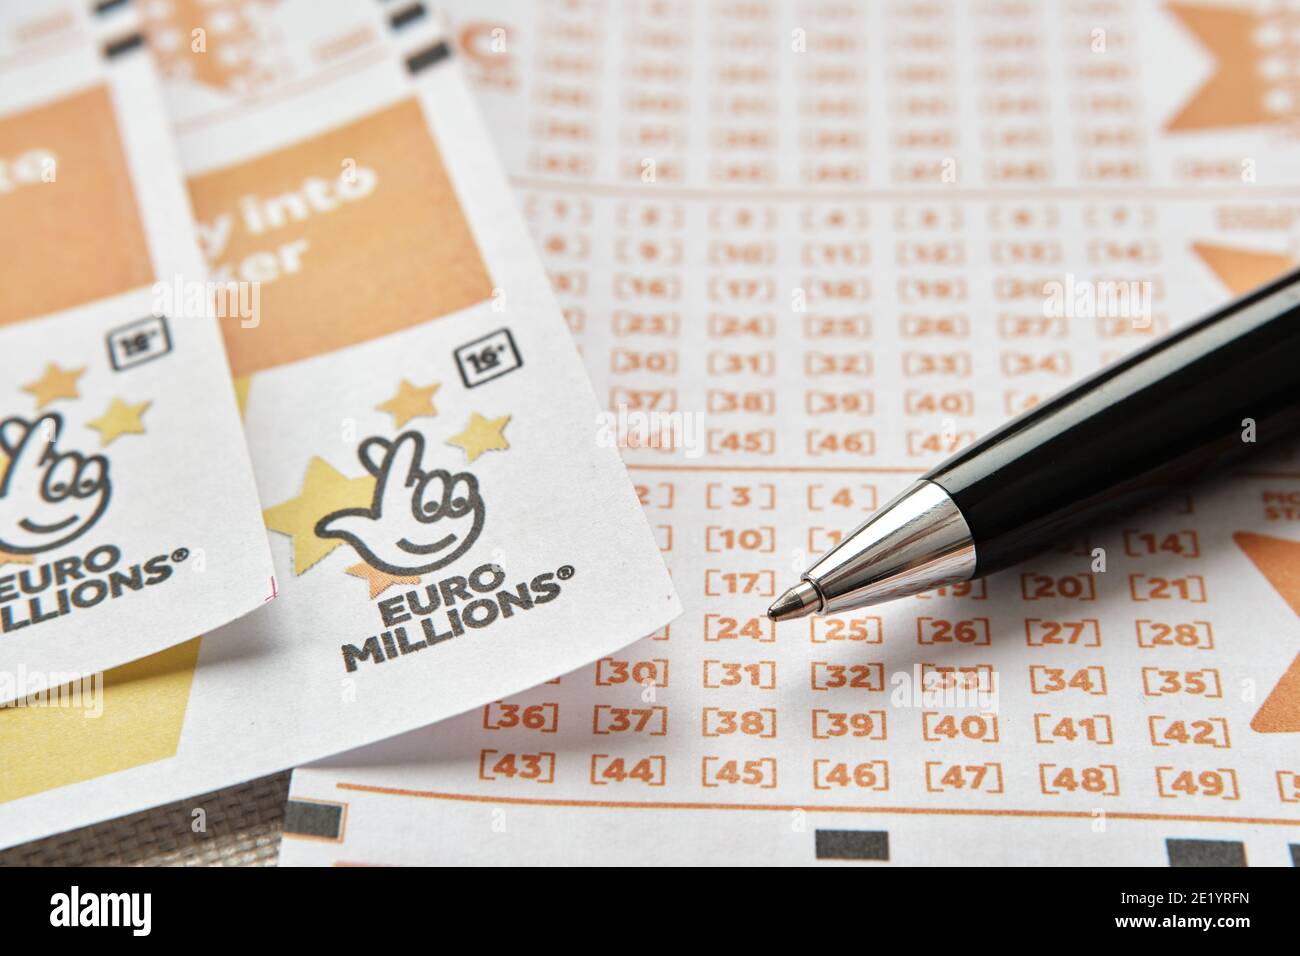 Stafford, Regno Unito - Novembre 10 2020: Carte e penna per lotteria Euromilions. Euromilions è la lotteria più grande d'Europa. Concetto. Foto Stock